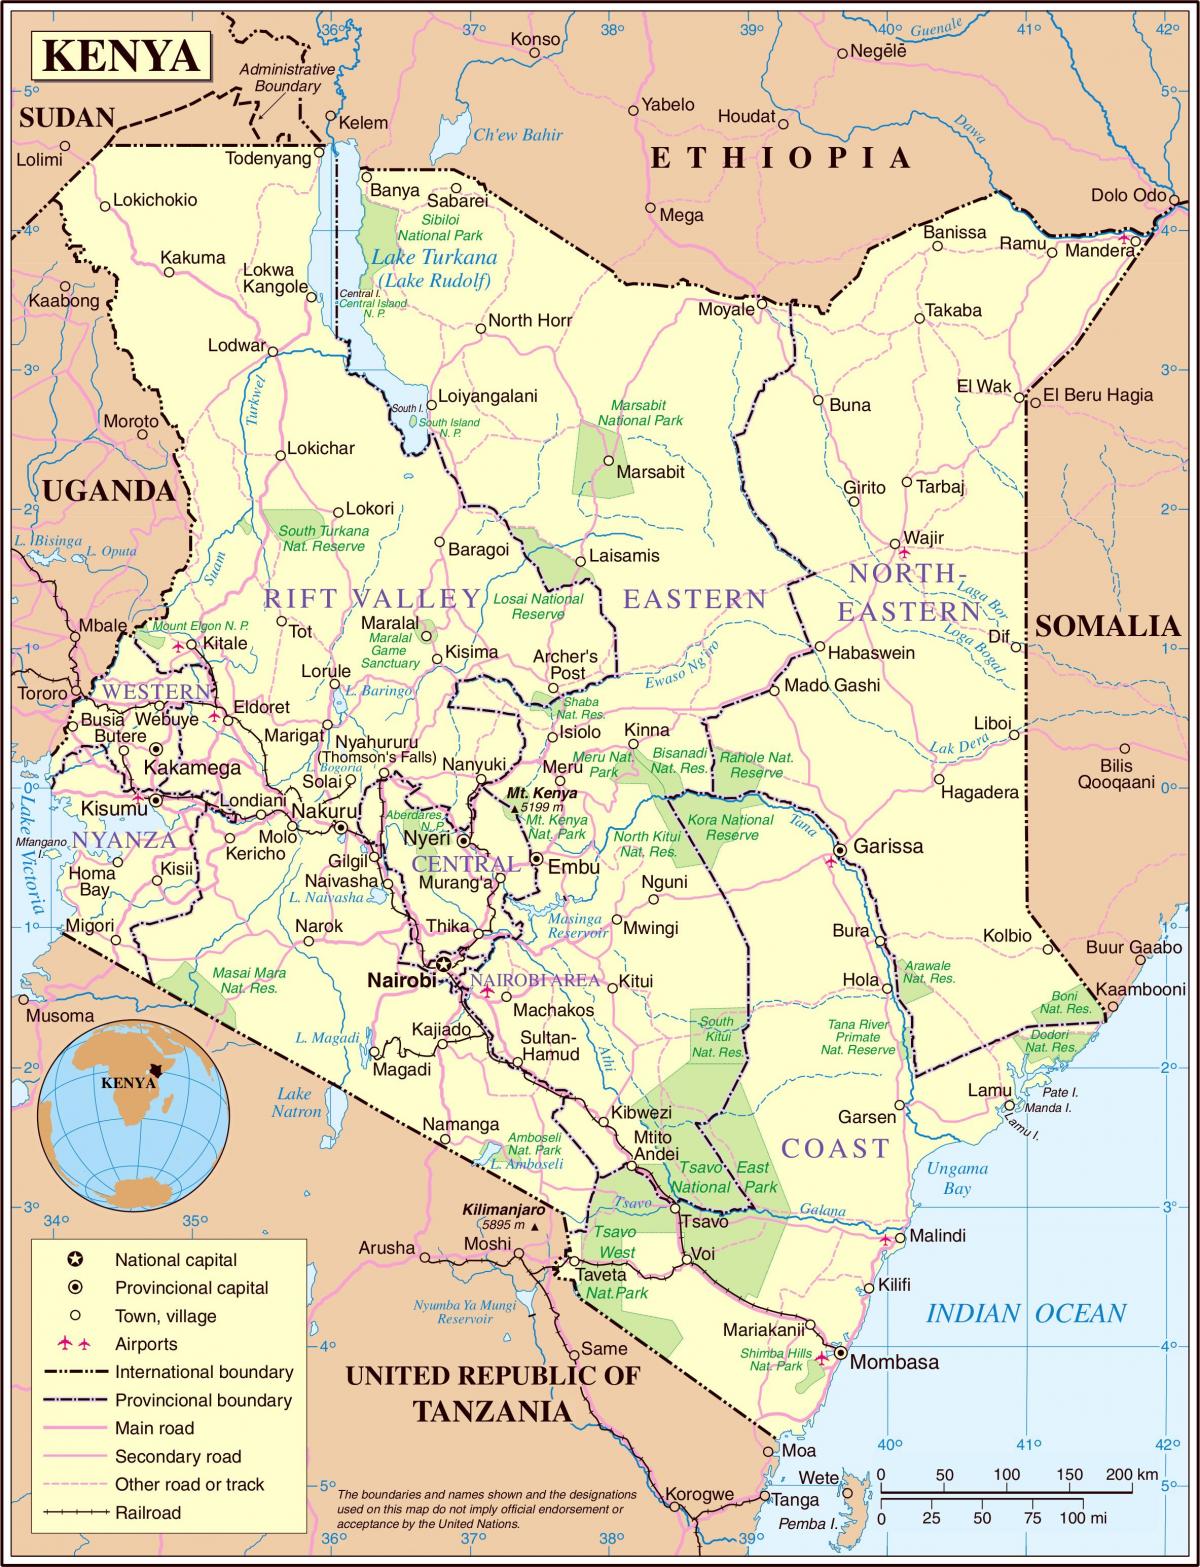 Kenya errepide mapa zehatza